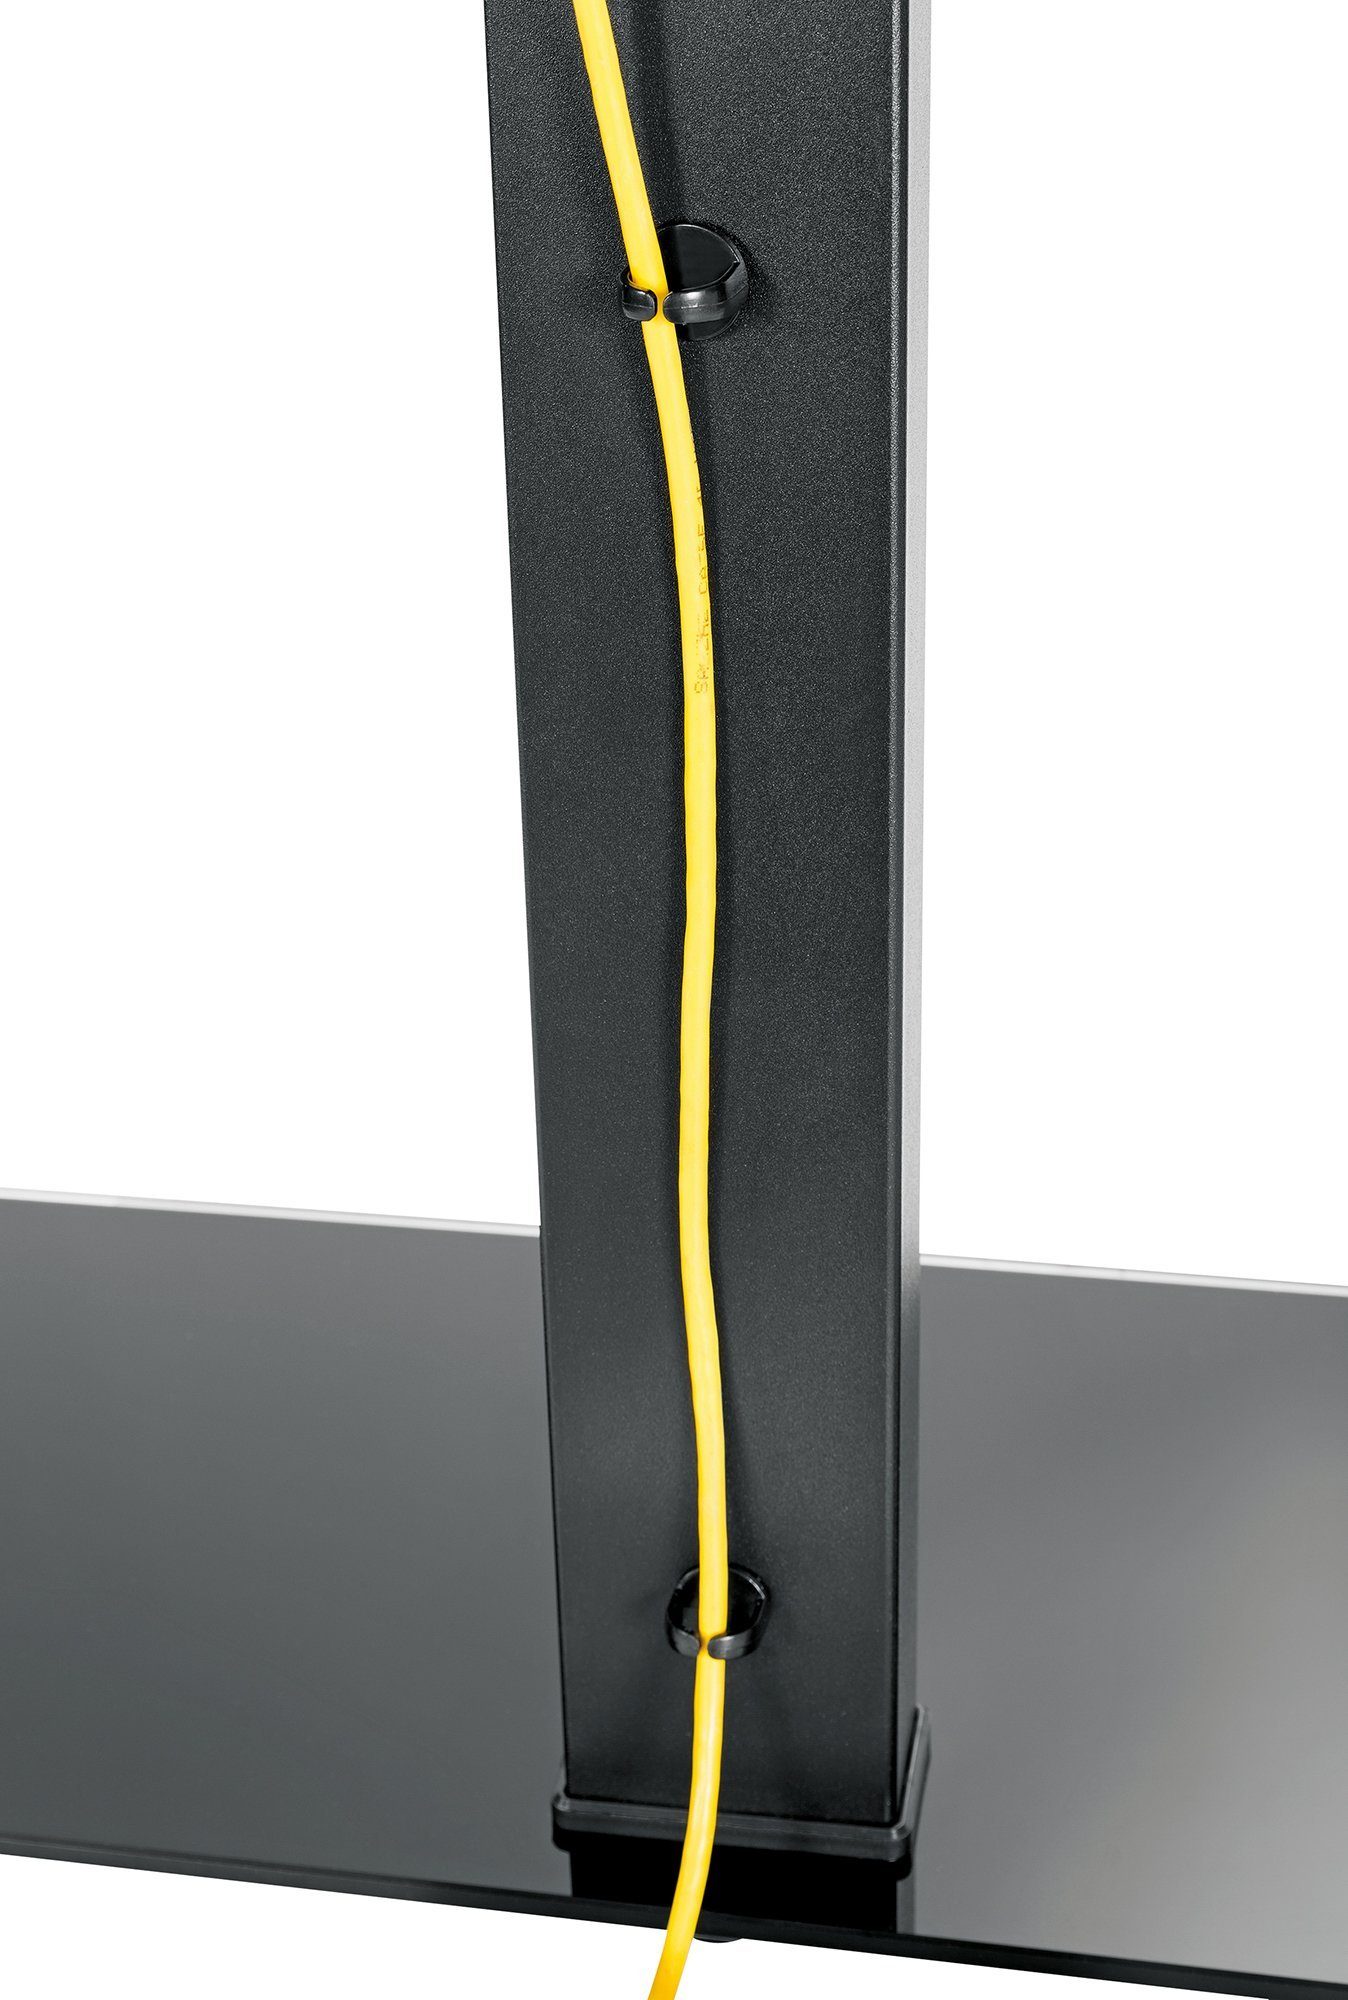 Schwaiger TV-Ständer, (bis TVS7040 bis 70 schwenkbar, 511 40kg, bis 600x400mm, freistehend, schwarz) Zoll,